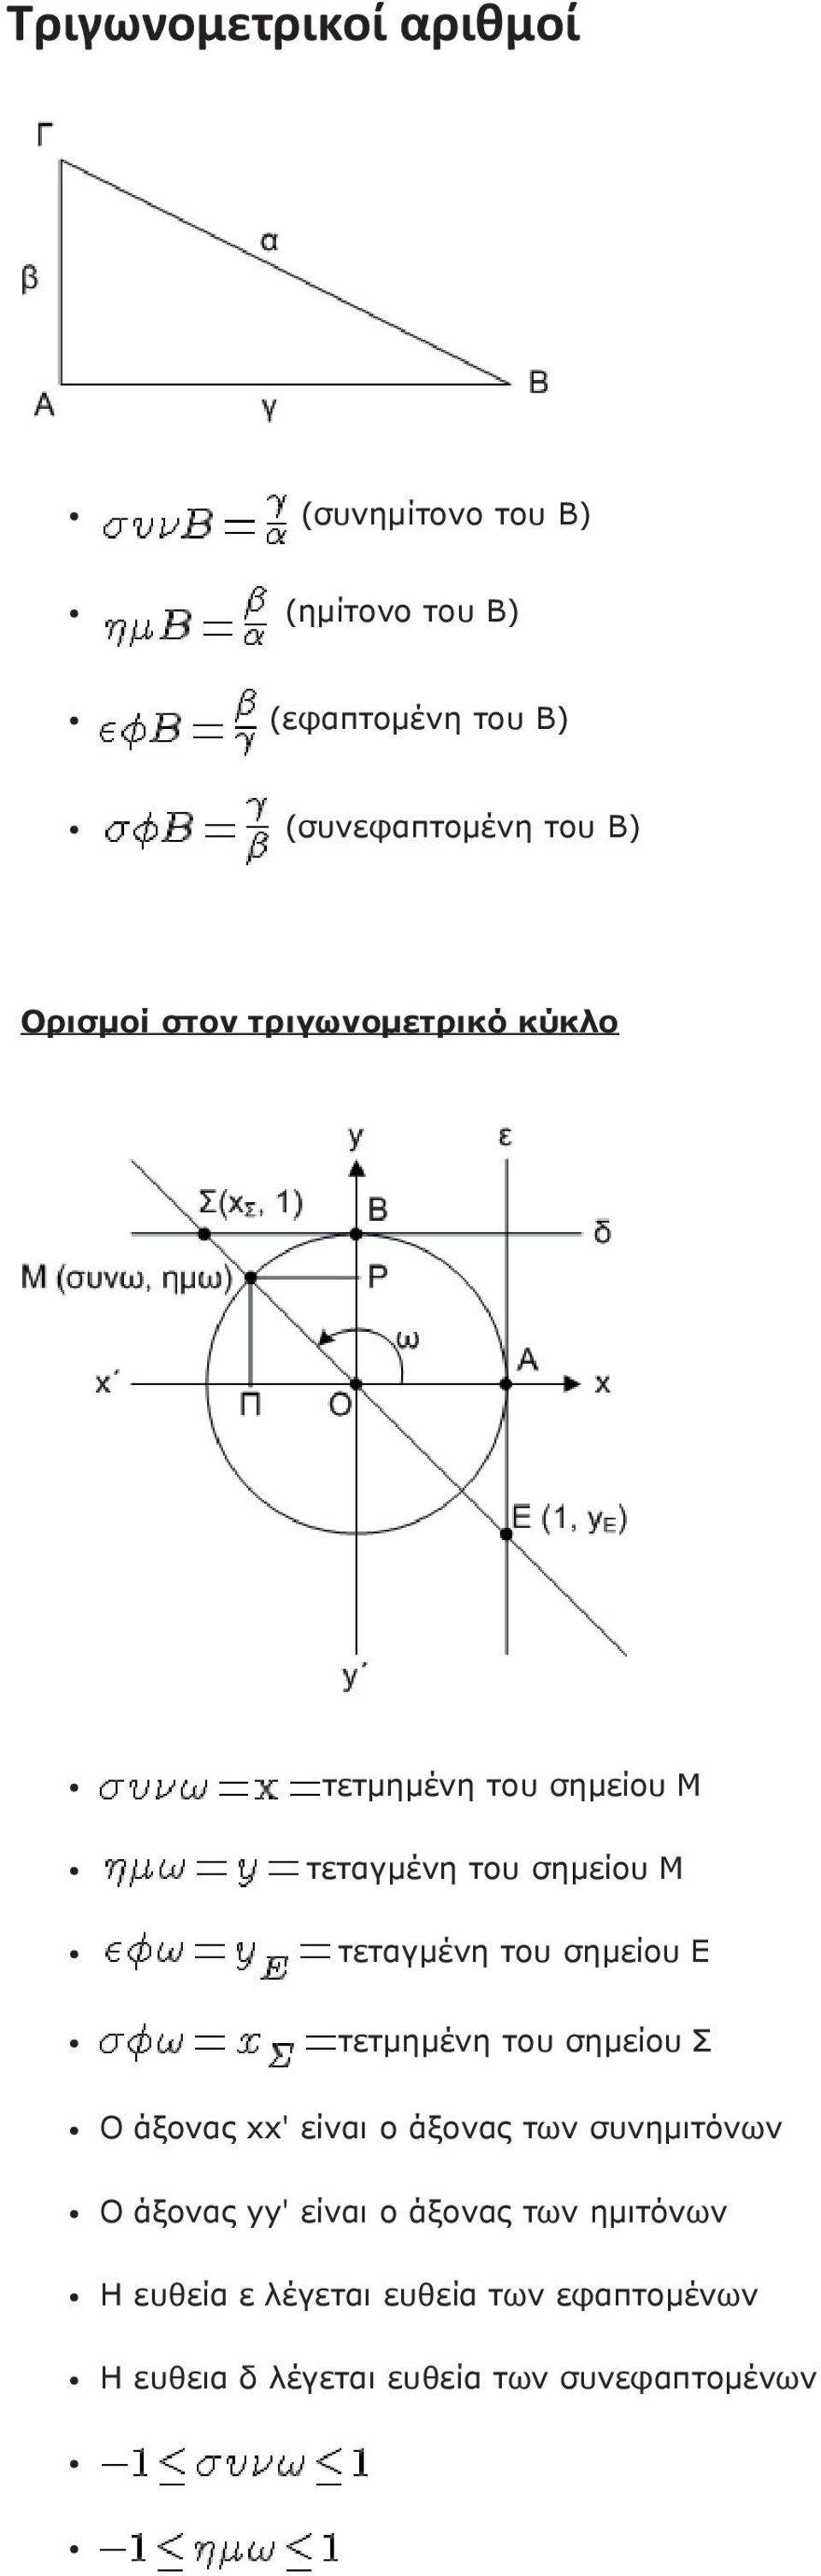 τετμημένη του σημείου Σ Ο άξονας xx' είναι ο άξονας των συνημιτόνων Ο άξονας yy' είναι ο άξονας των ημιτόνων Η ευθεία ε λέγεται ευθεία των